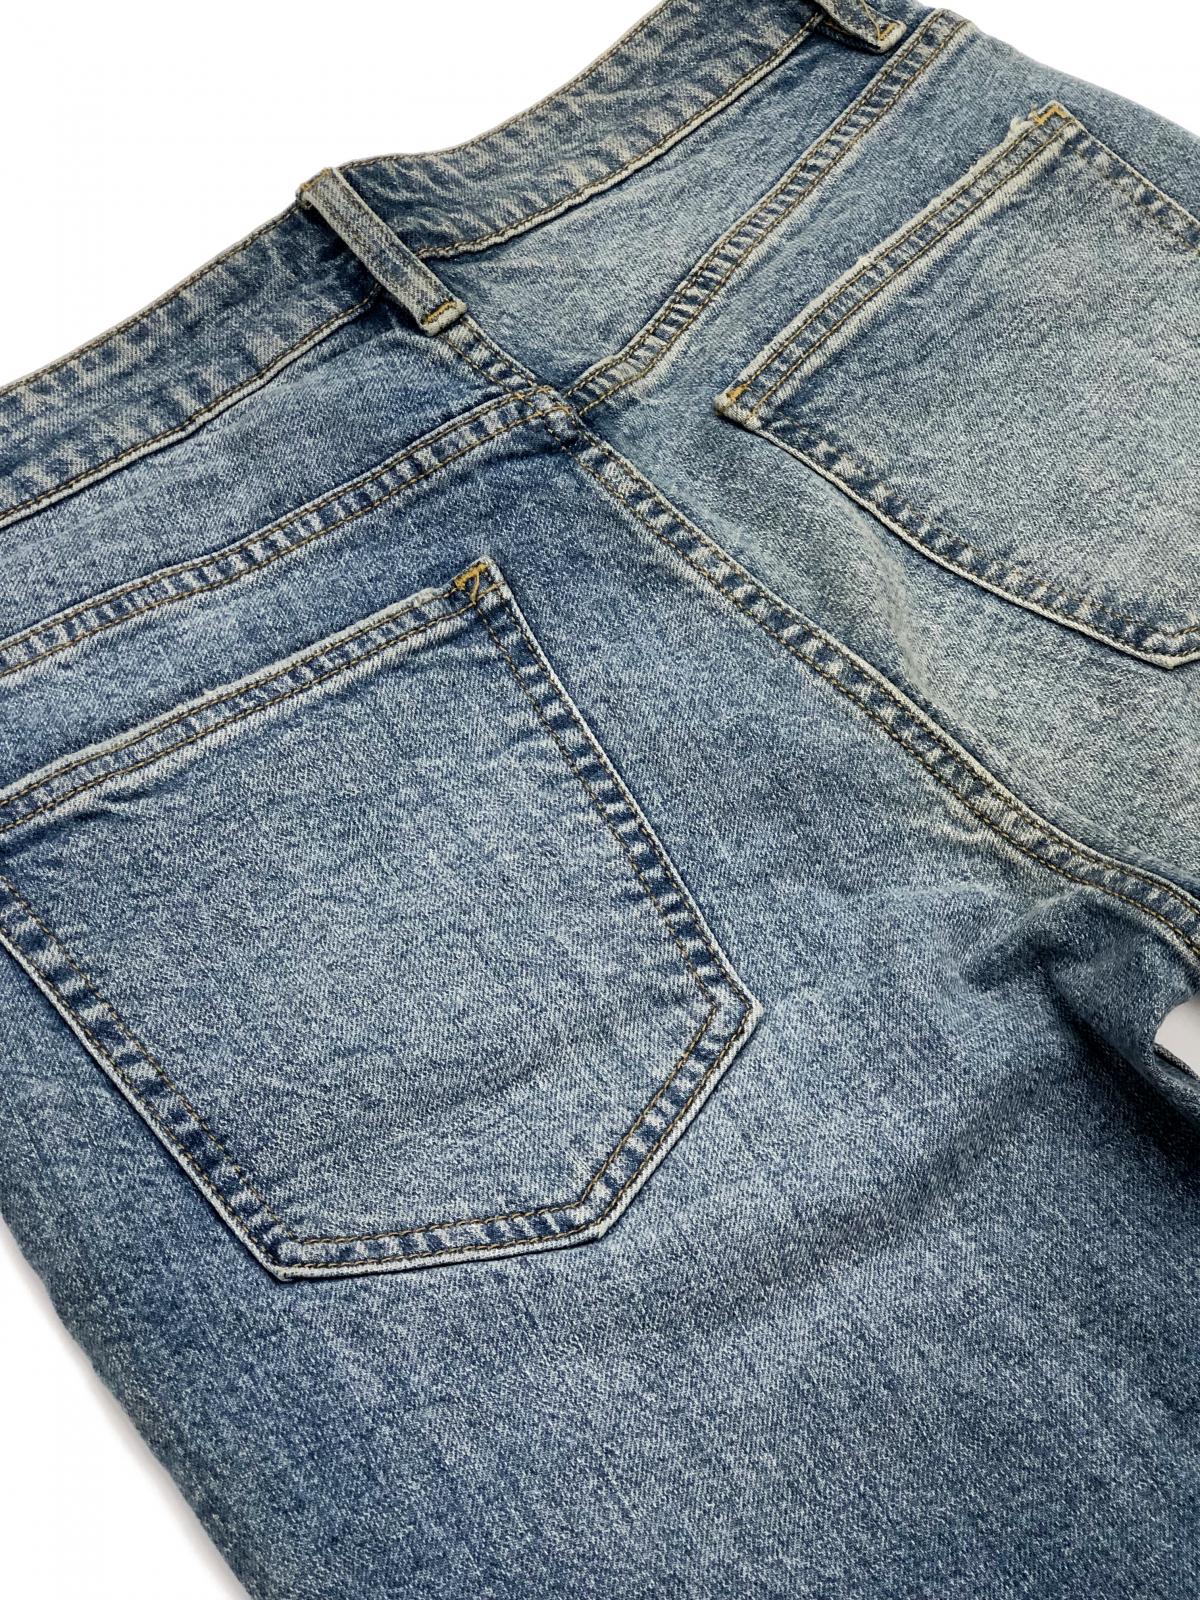 Men's Slimfit Jeans P0006 #6